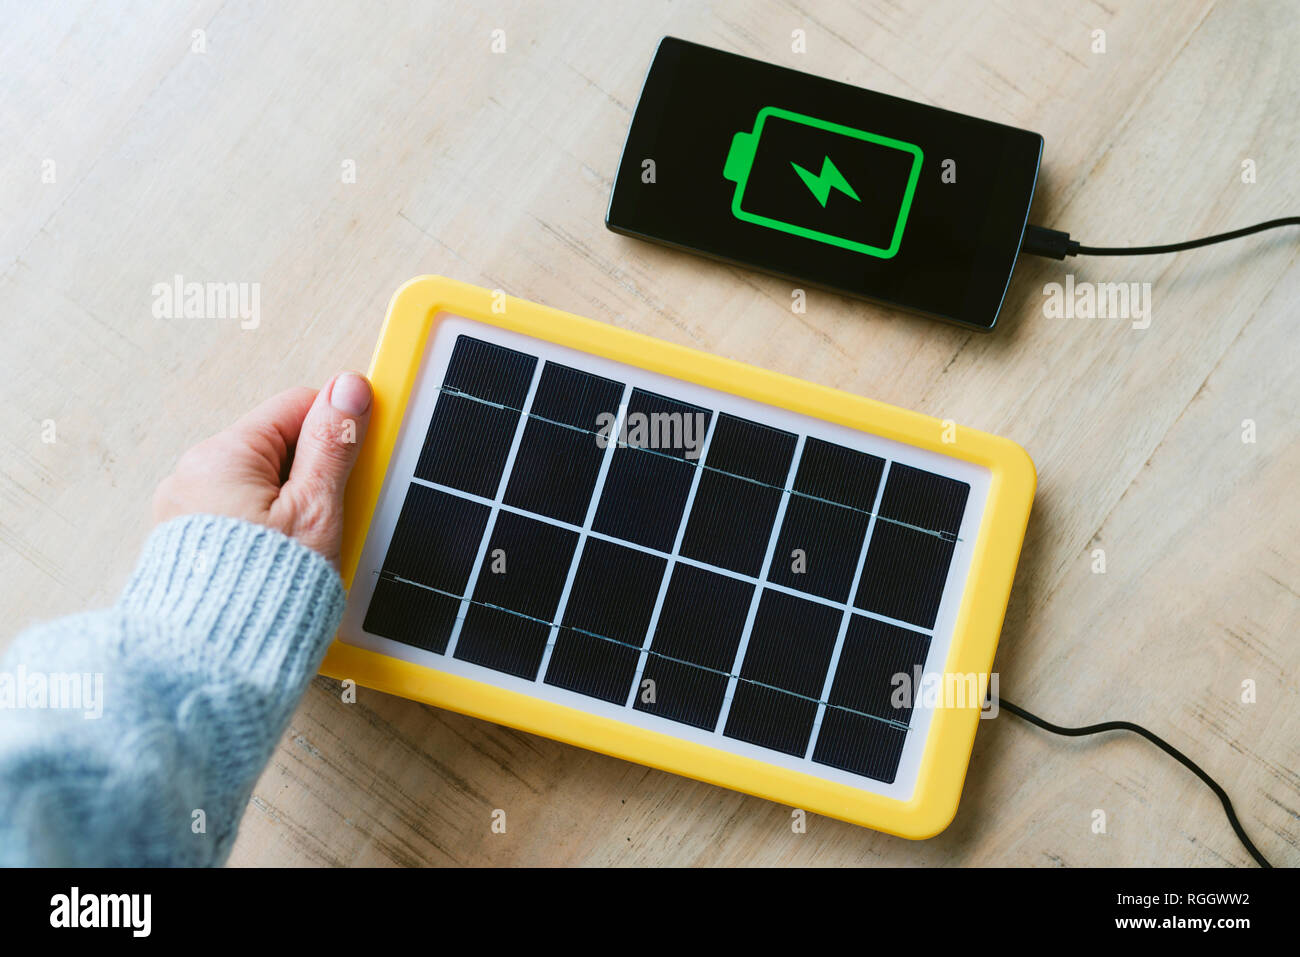 La tecnología de la energía renovable, el panel solar carga la batería del teléfono móvil. Foto de stock